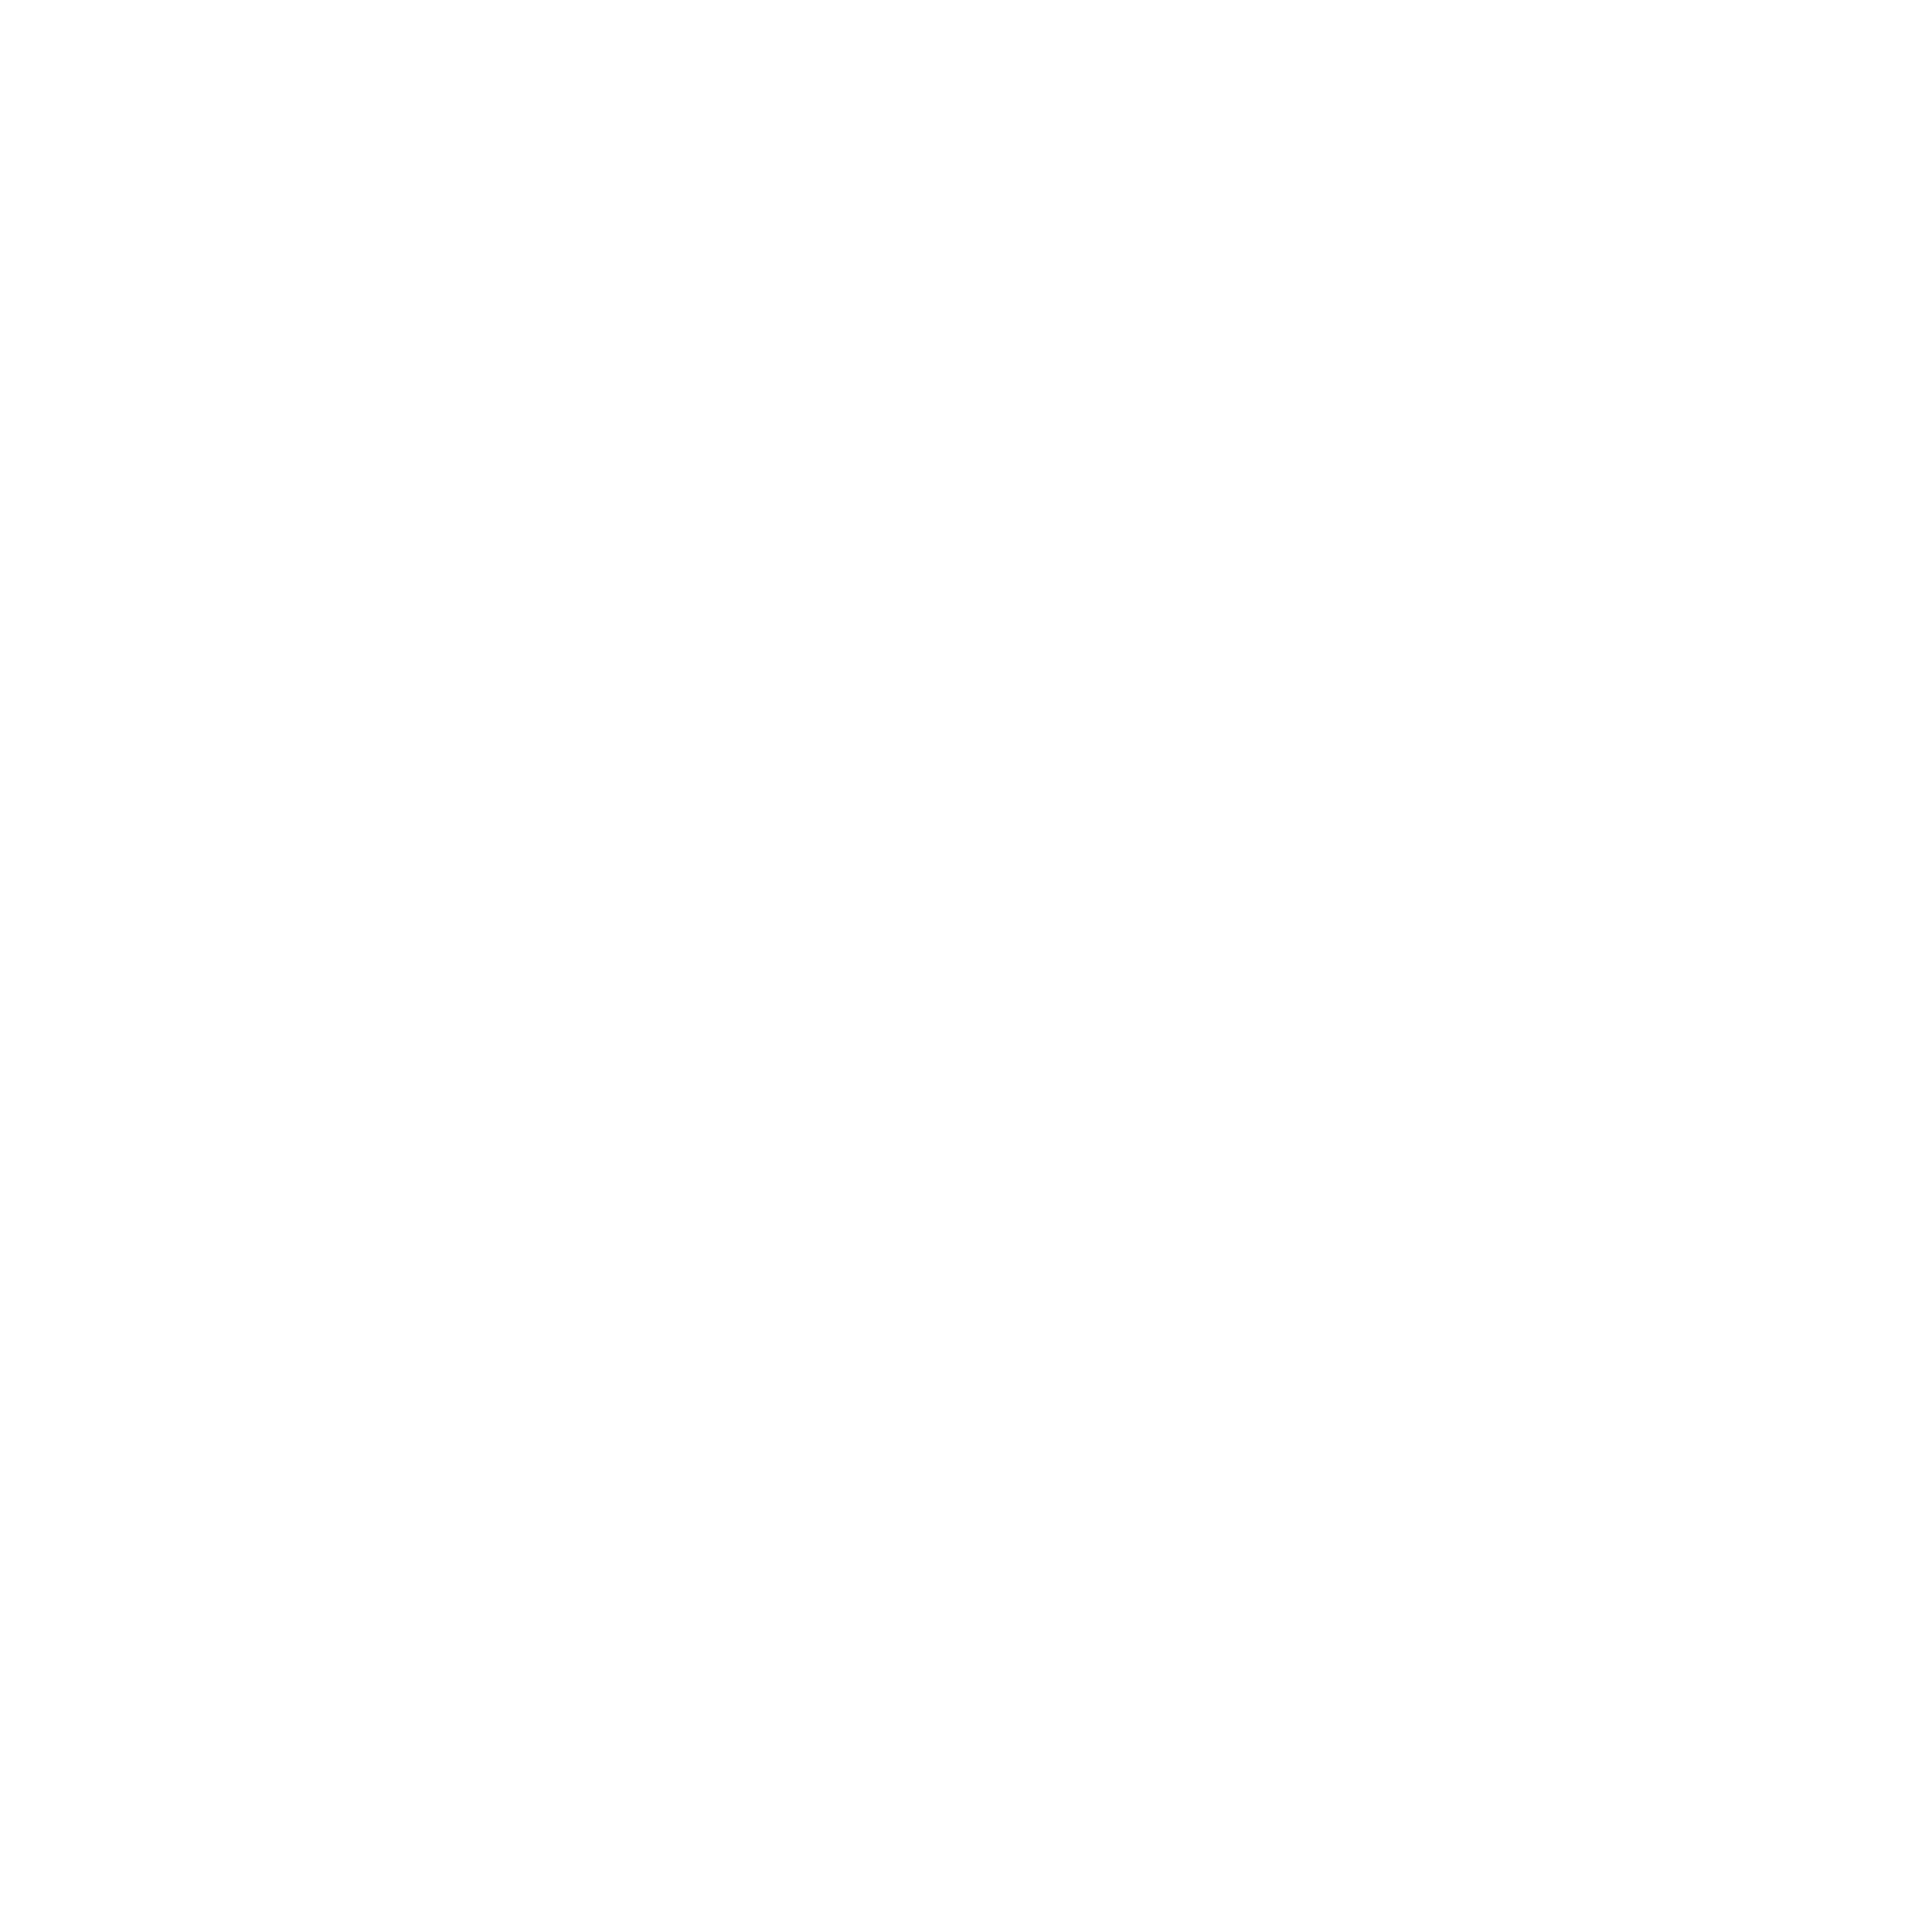 Joburg Logos for Web 2022 Sanlam Sq